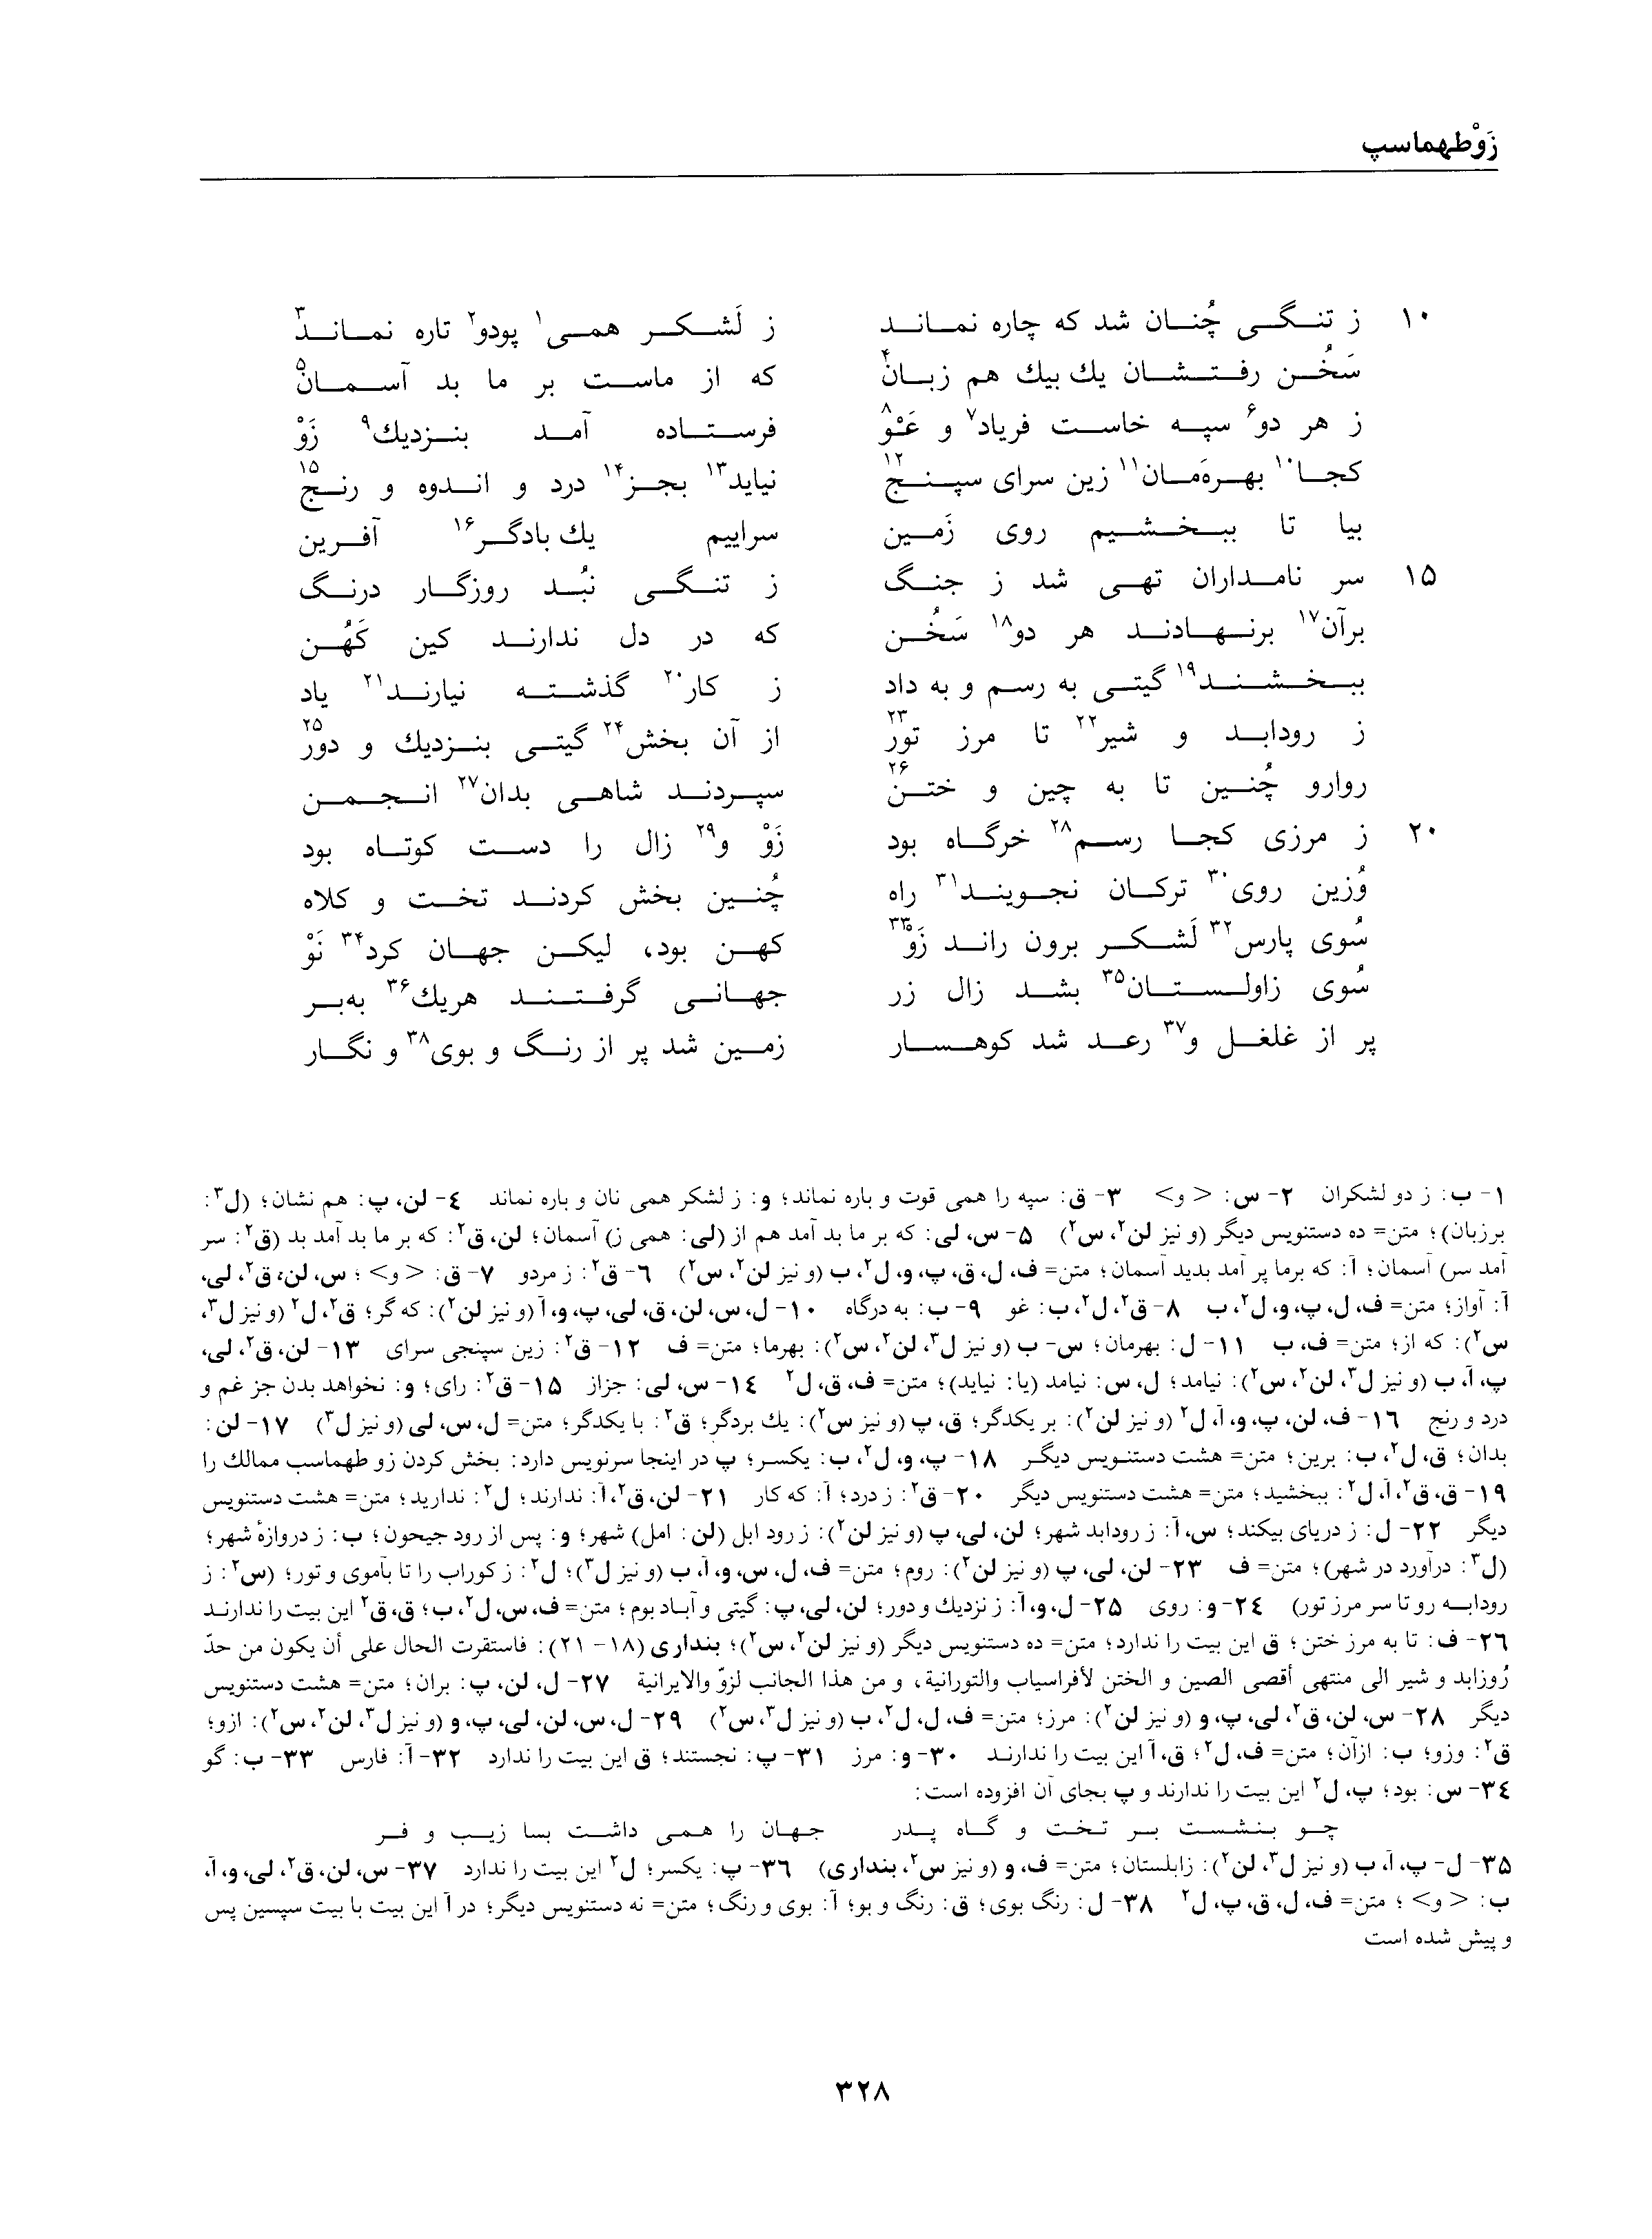 vol. 1, p. 328